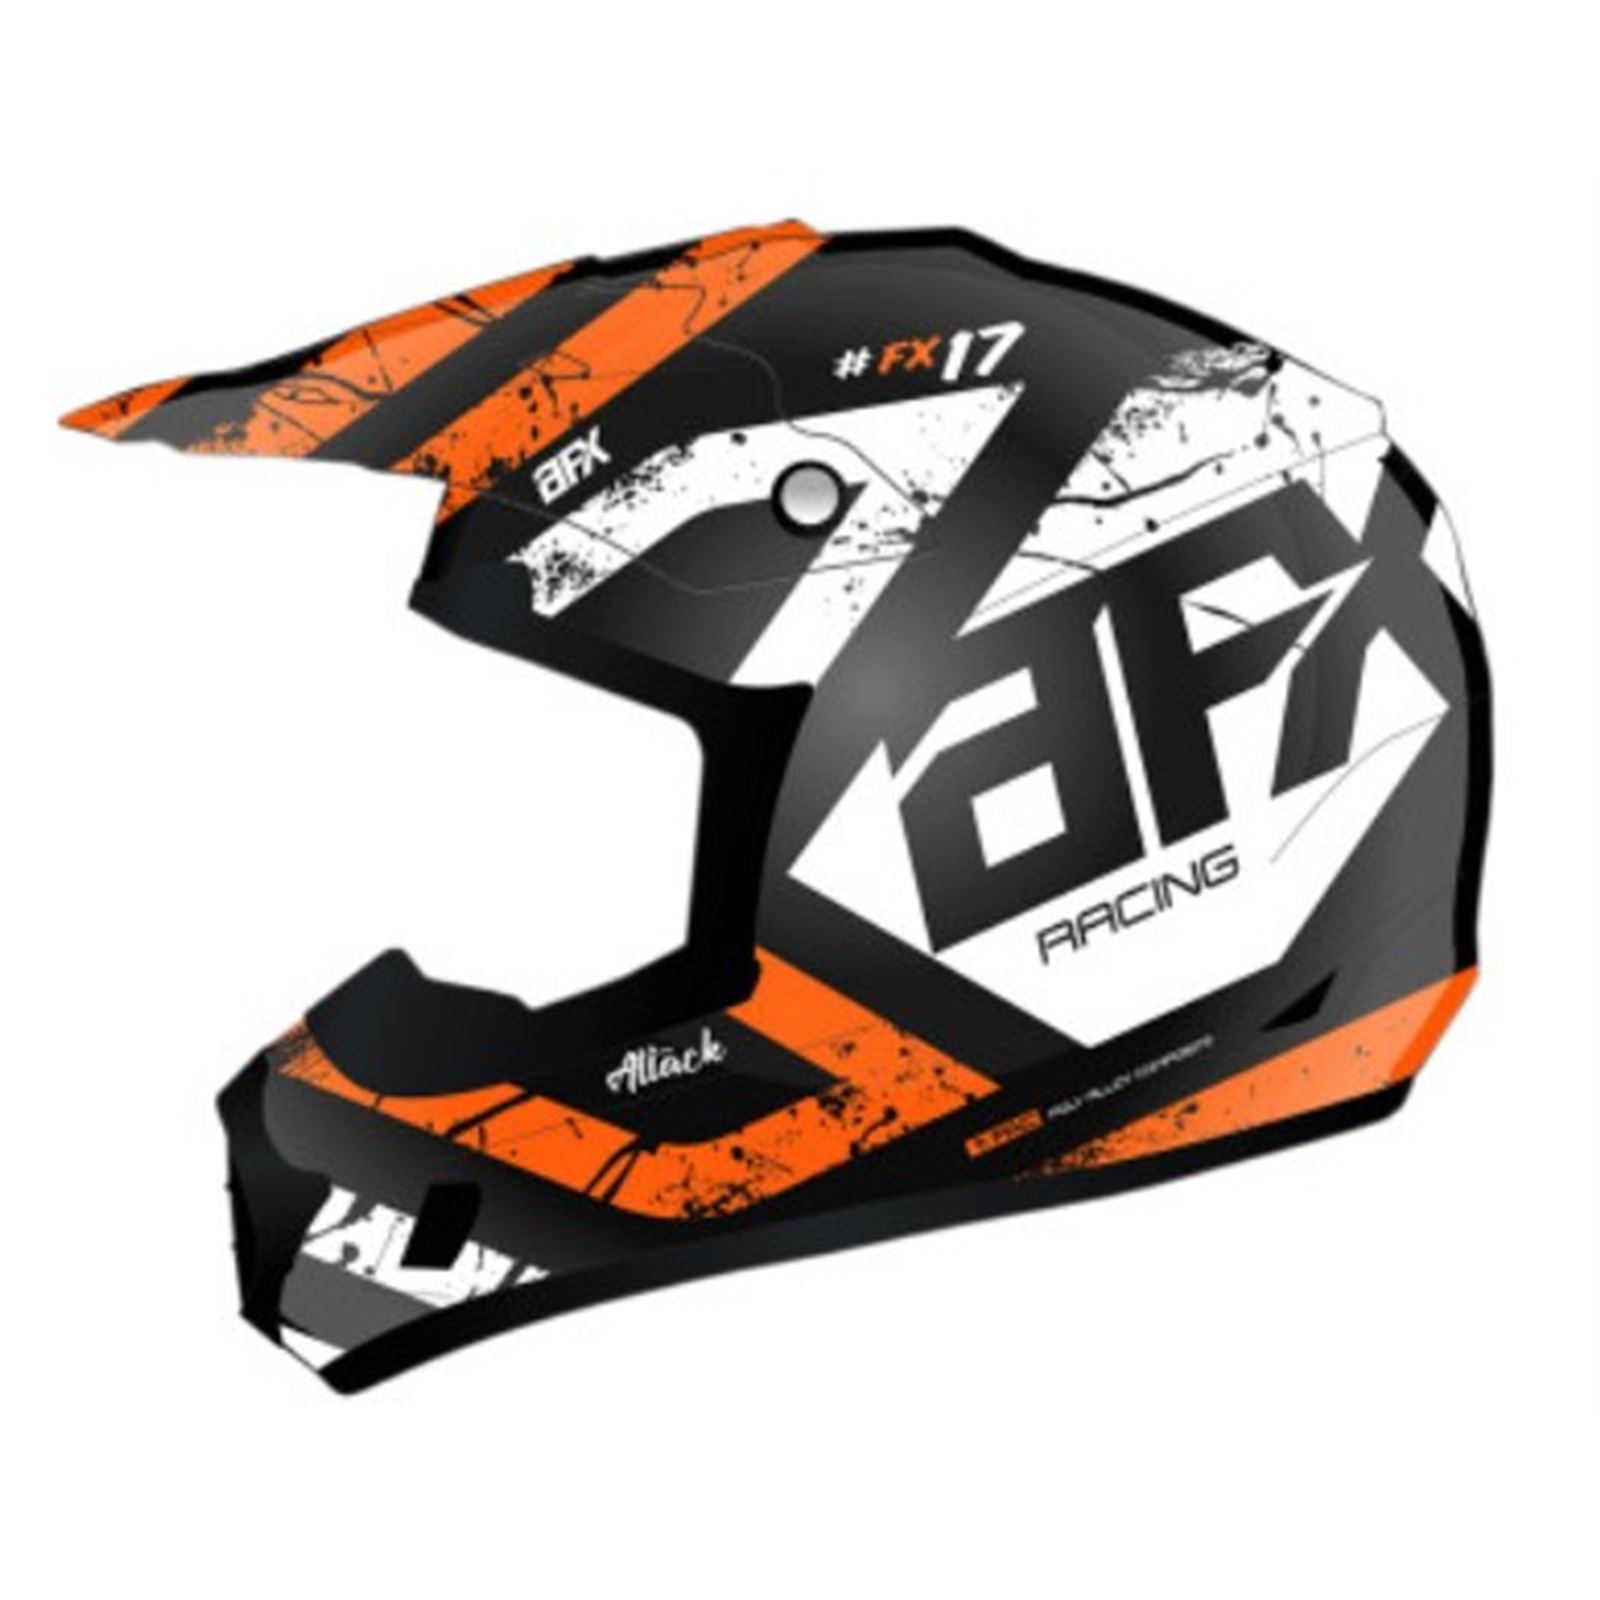 AFX FX-17 Helmet - Attack - Matte Black/Orange - Small